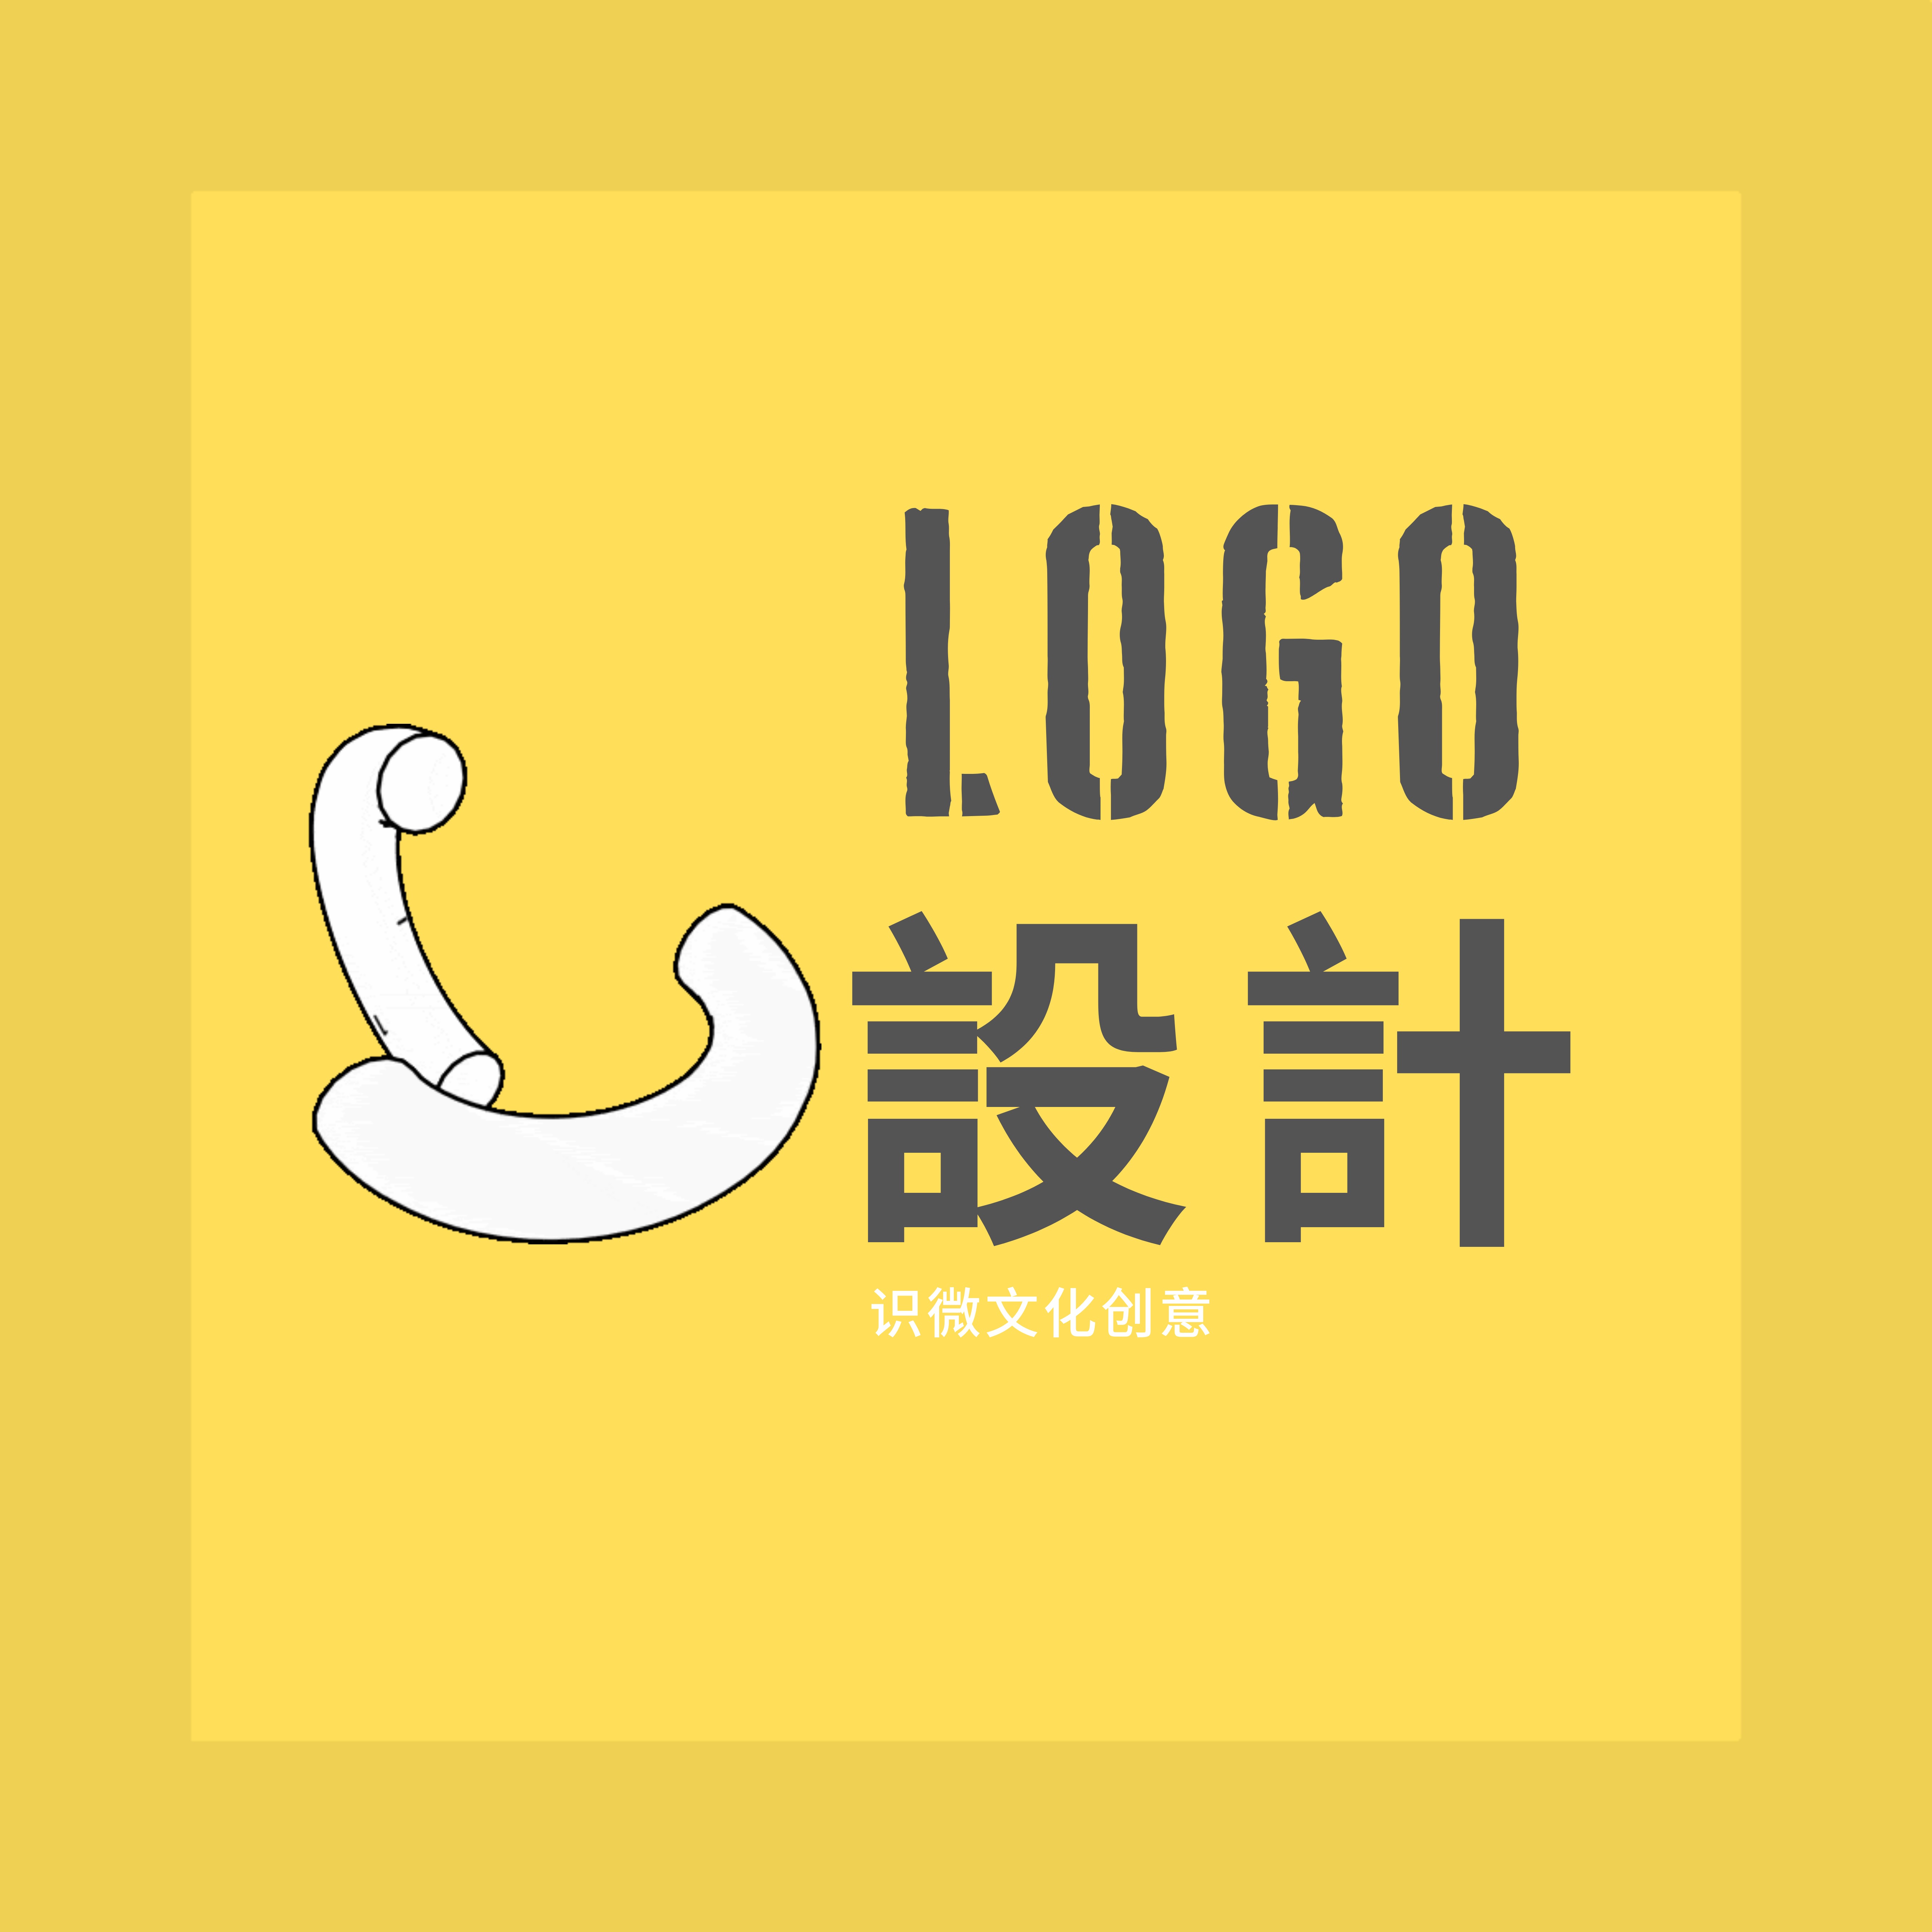 【识微文创】公司标志设计品牌字体设计商标设计LOGO图标设计